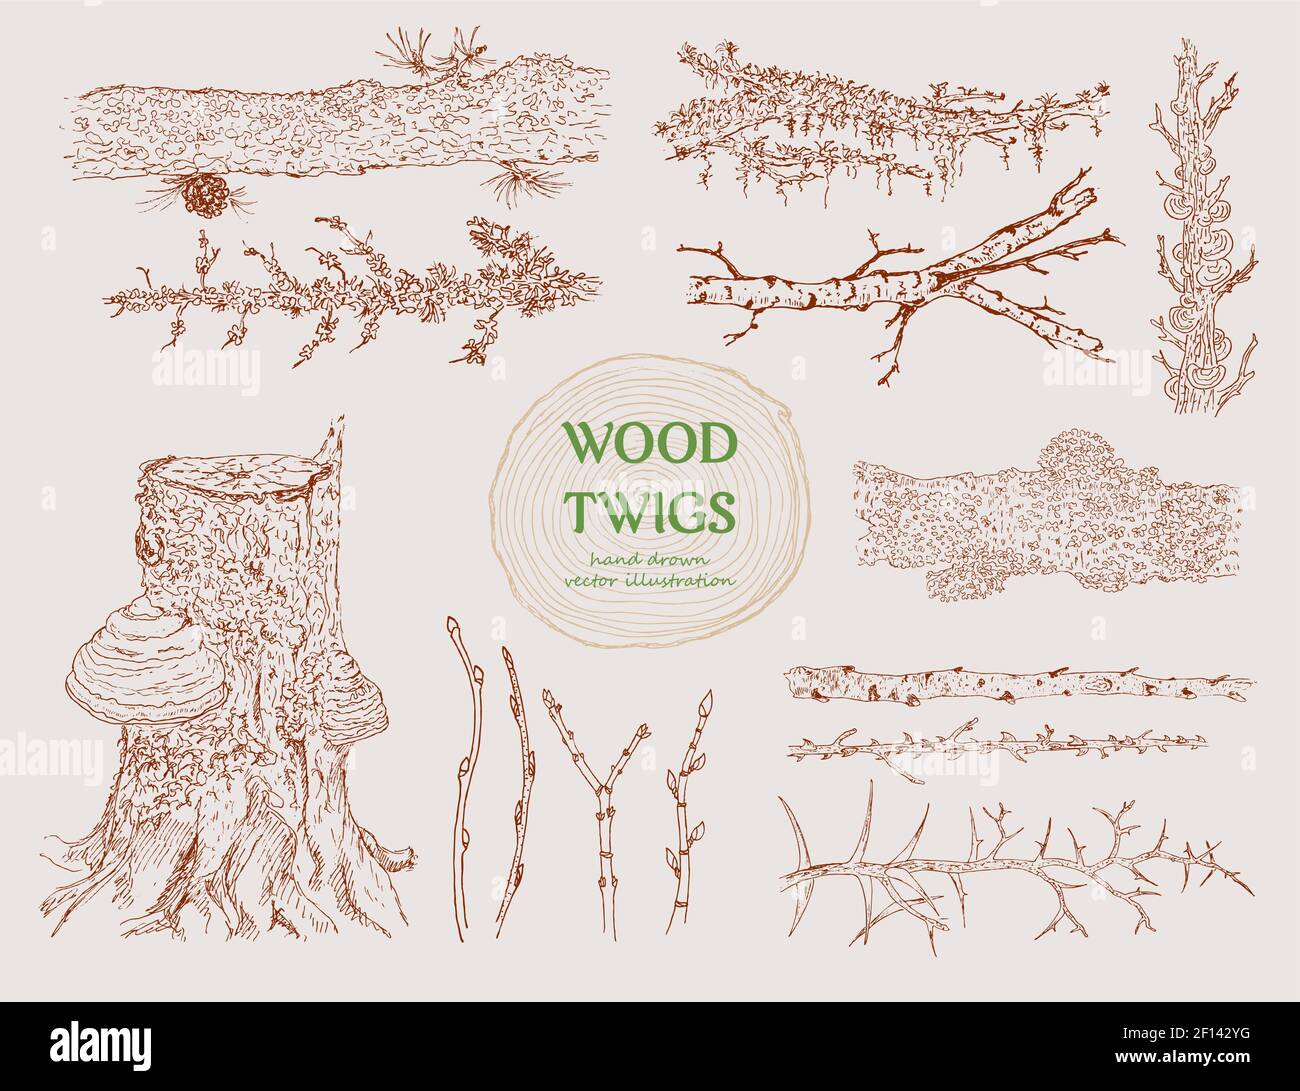 Handgezeichnete Holzzweige mit verschiedenen Baumzweigen Stämme gesetzt Stupps Kegel und Pilze isoliert Vektor-Illustration Stock Vektor